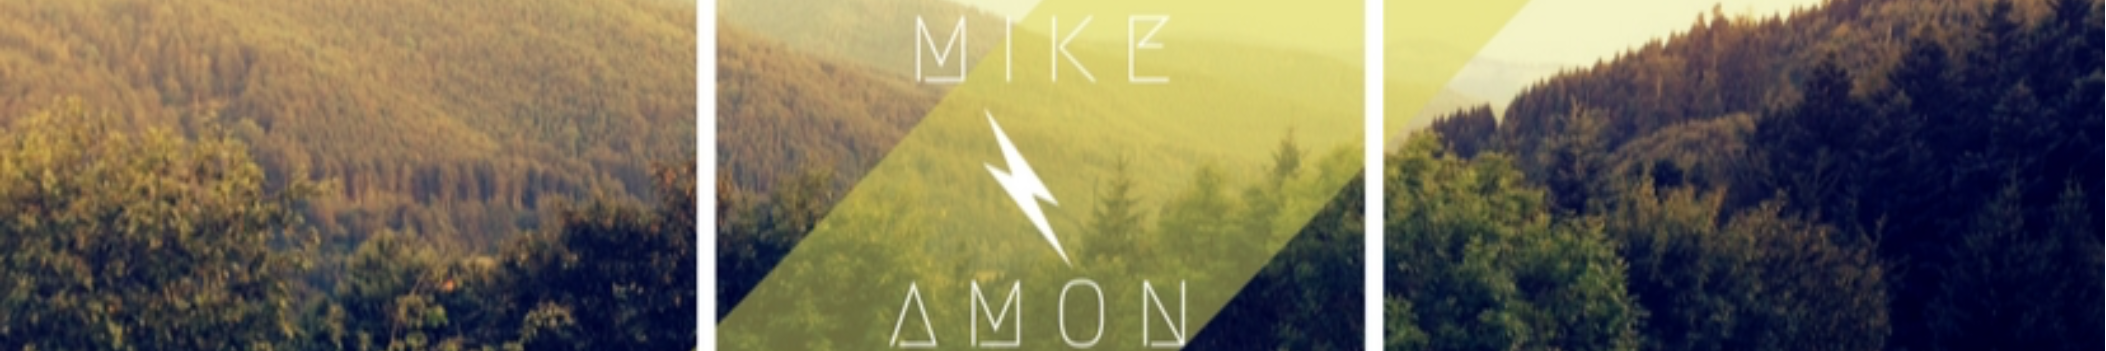 Mike Amon